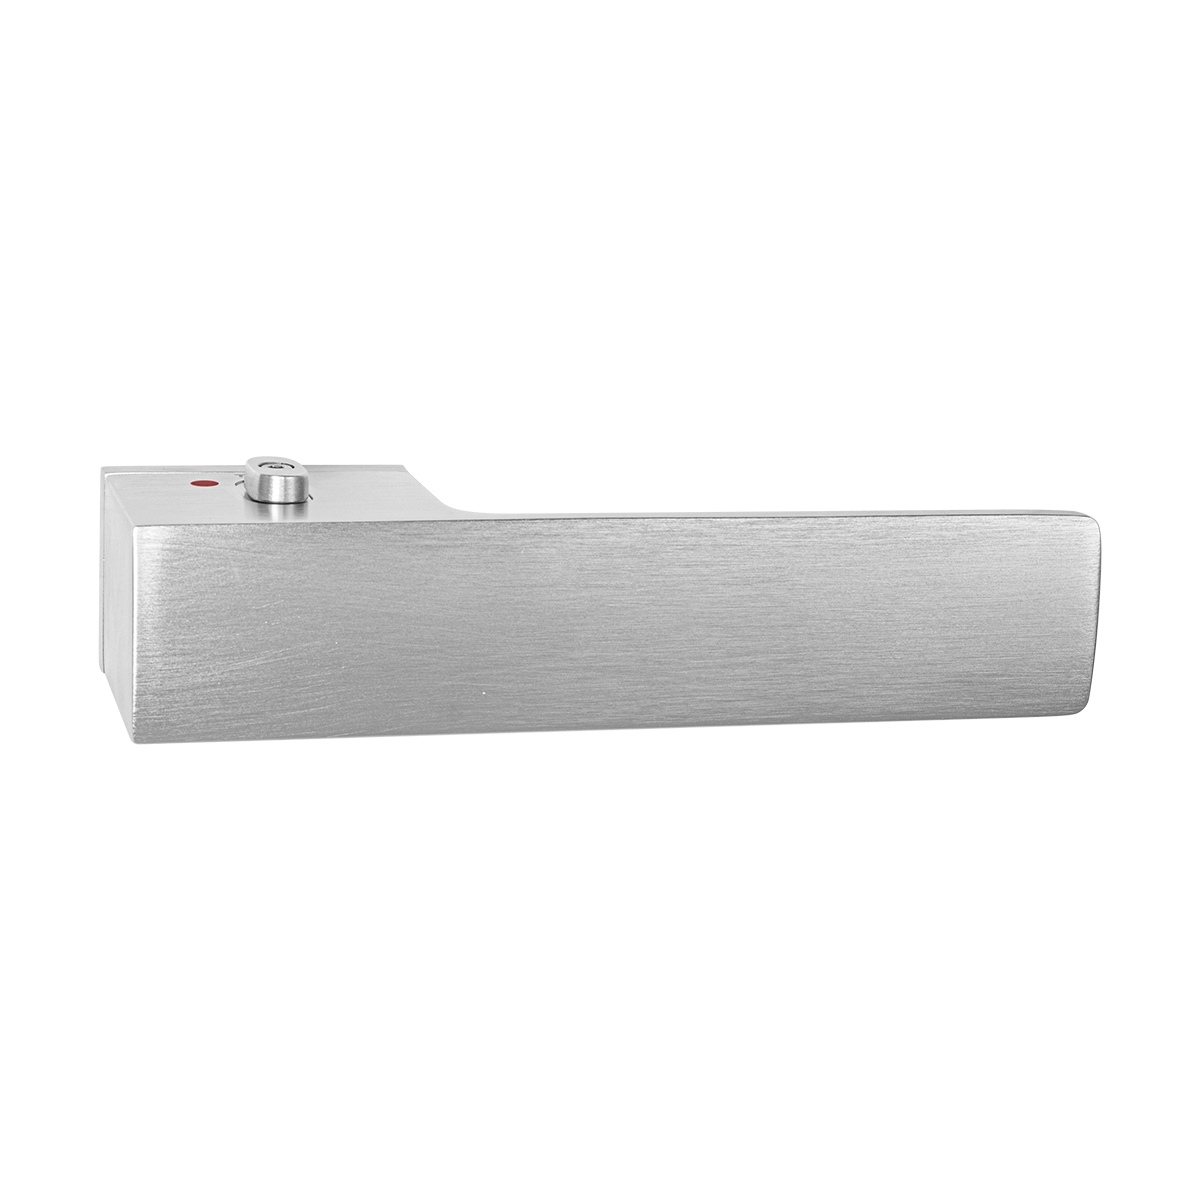 TI - GORDO - RT5 4084 s uzamykaním, 46-53 mm bez spodnej rozety, kľučka/kľučka WC ľavá